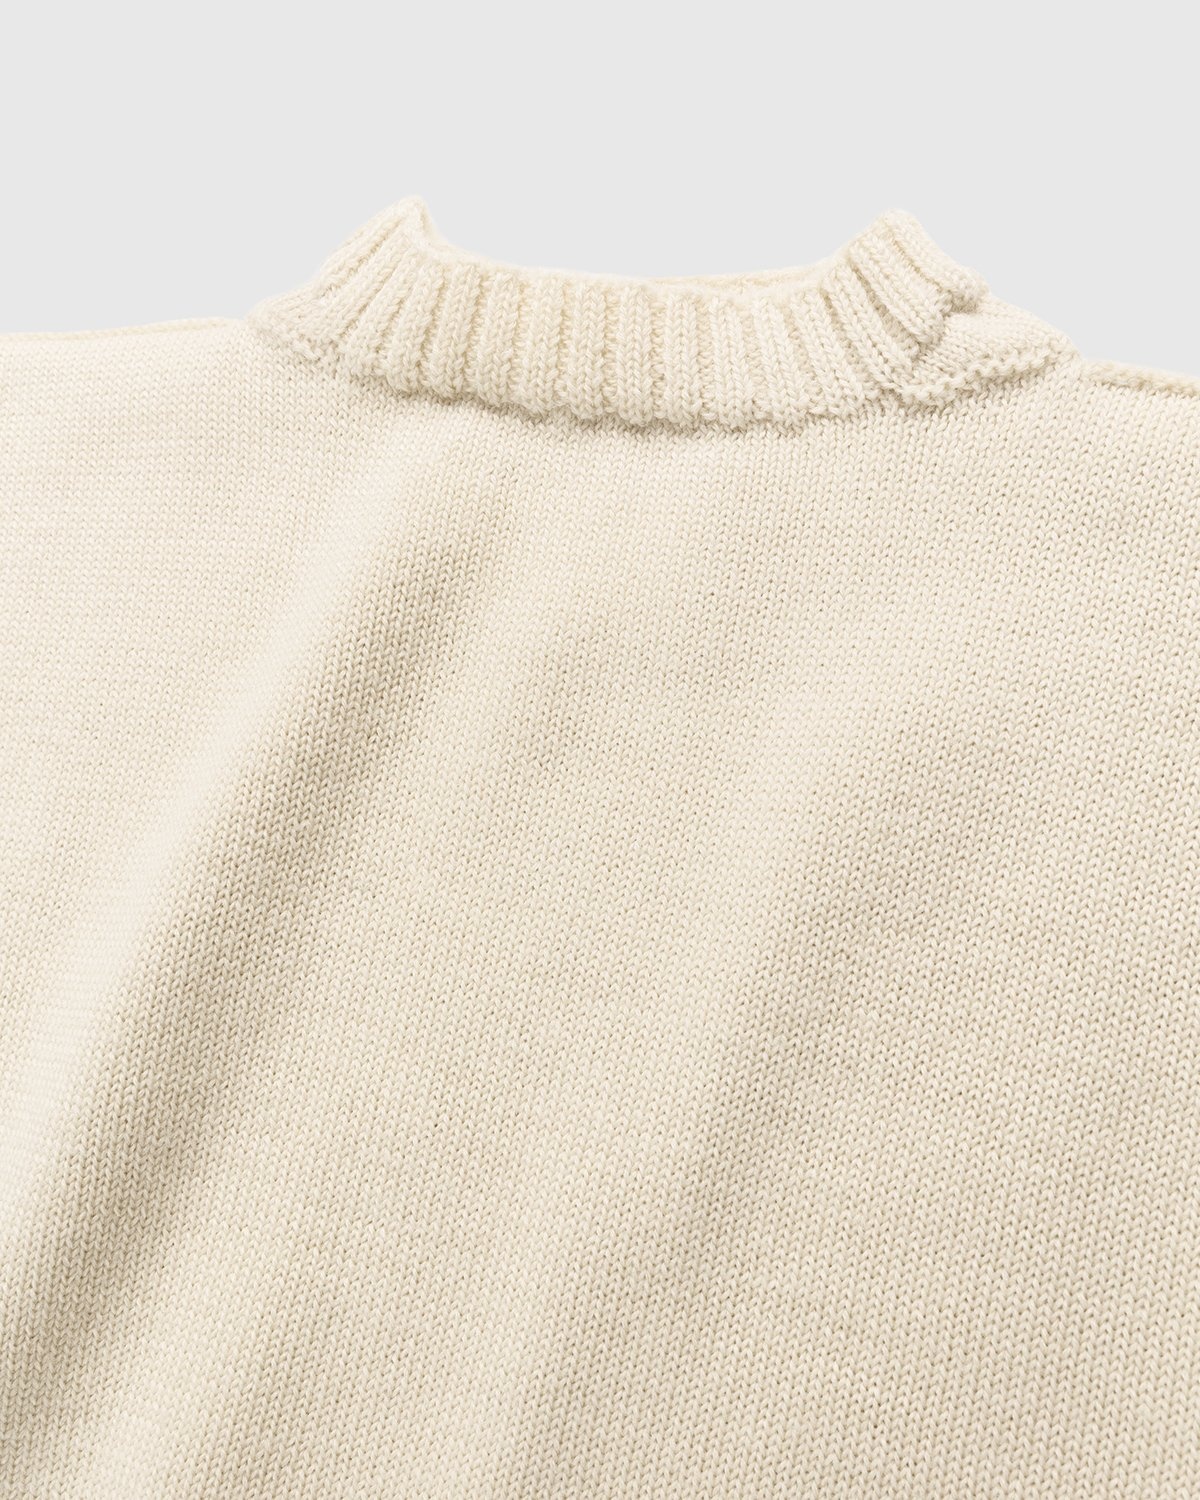 Maison Margiela – Pullover Ecru - Knitwear - Beige - Image 4